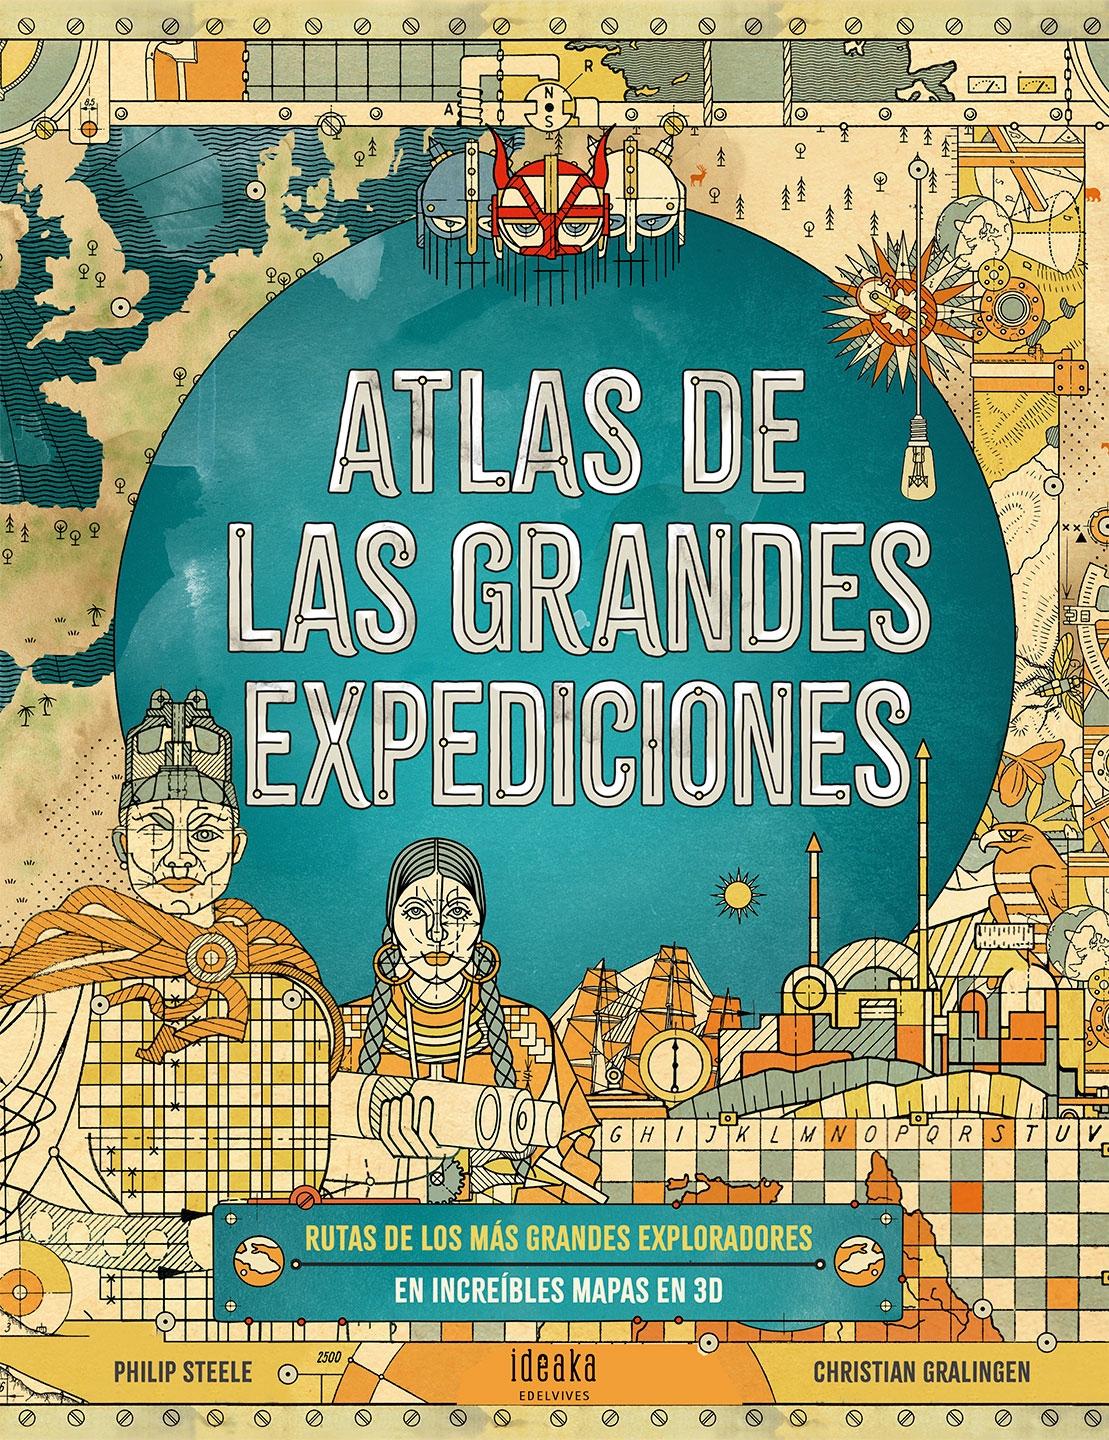 Atlas de las grandes expediciones. 